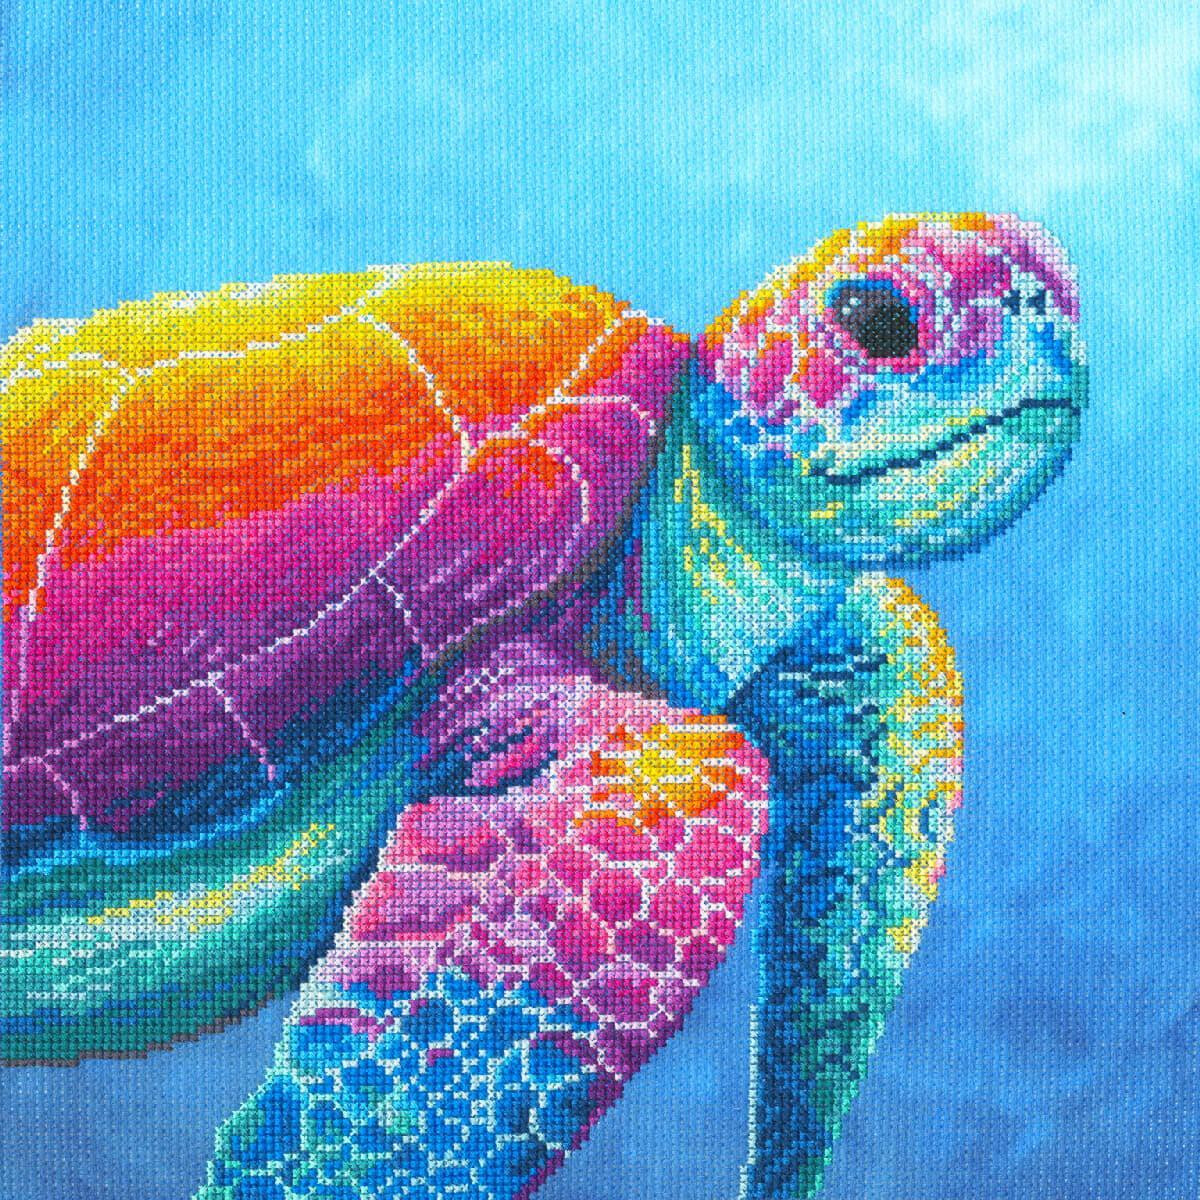 Яркая иллюстрация морской черепахи на голубом фоне...